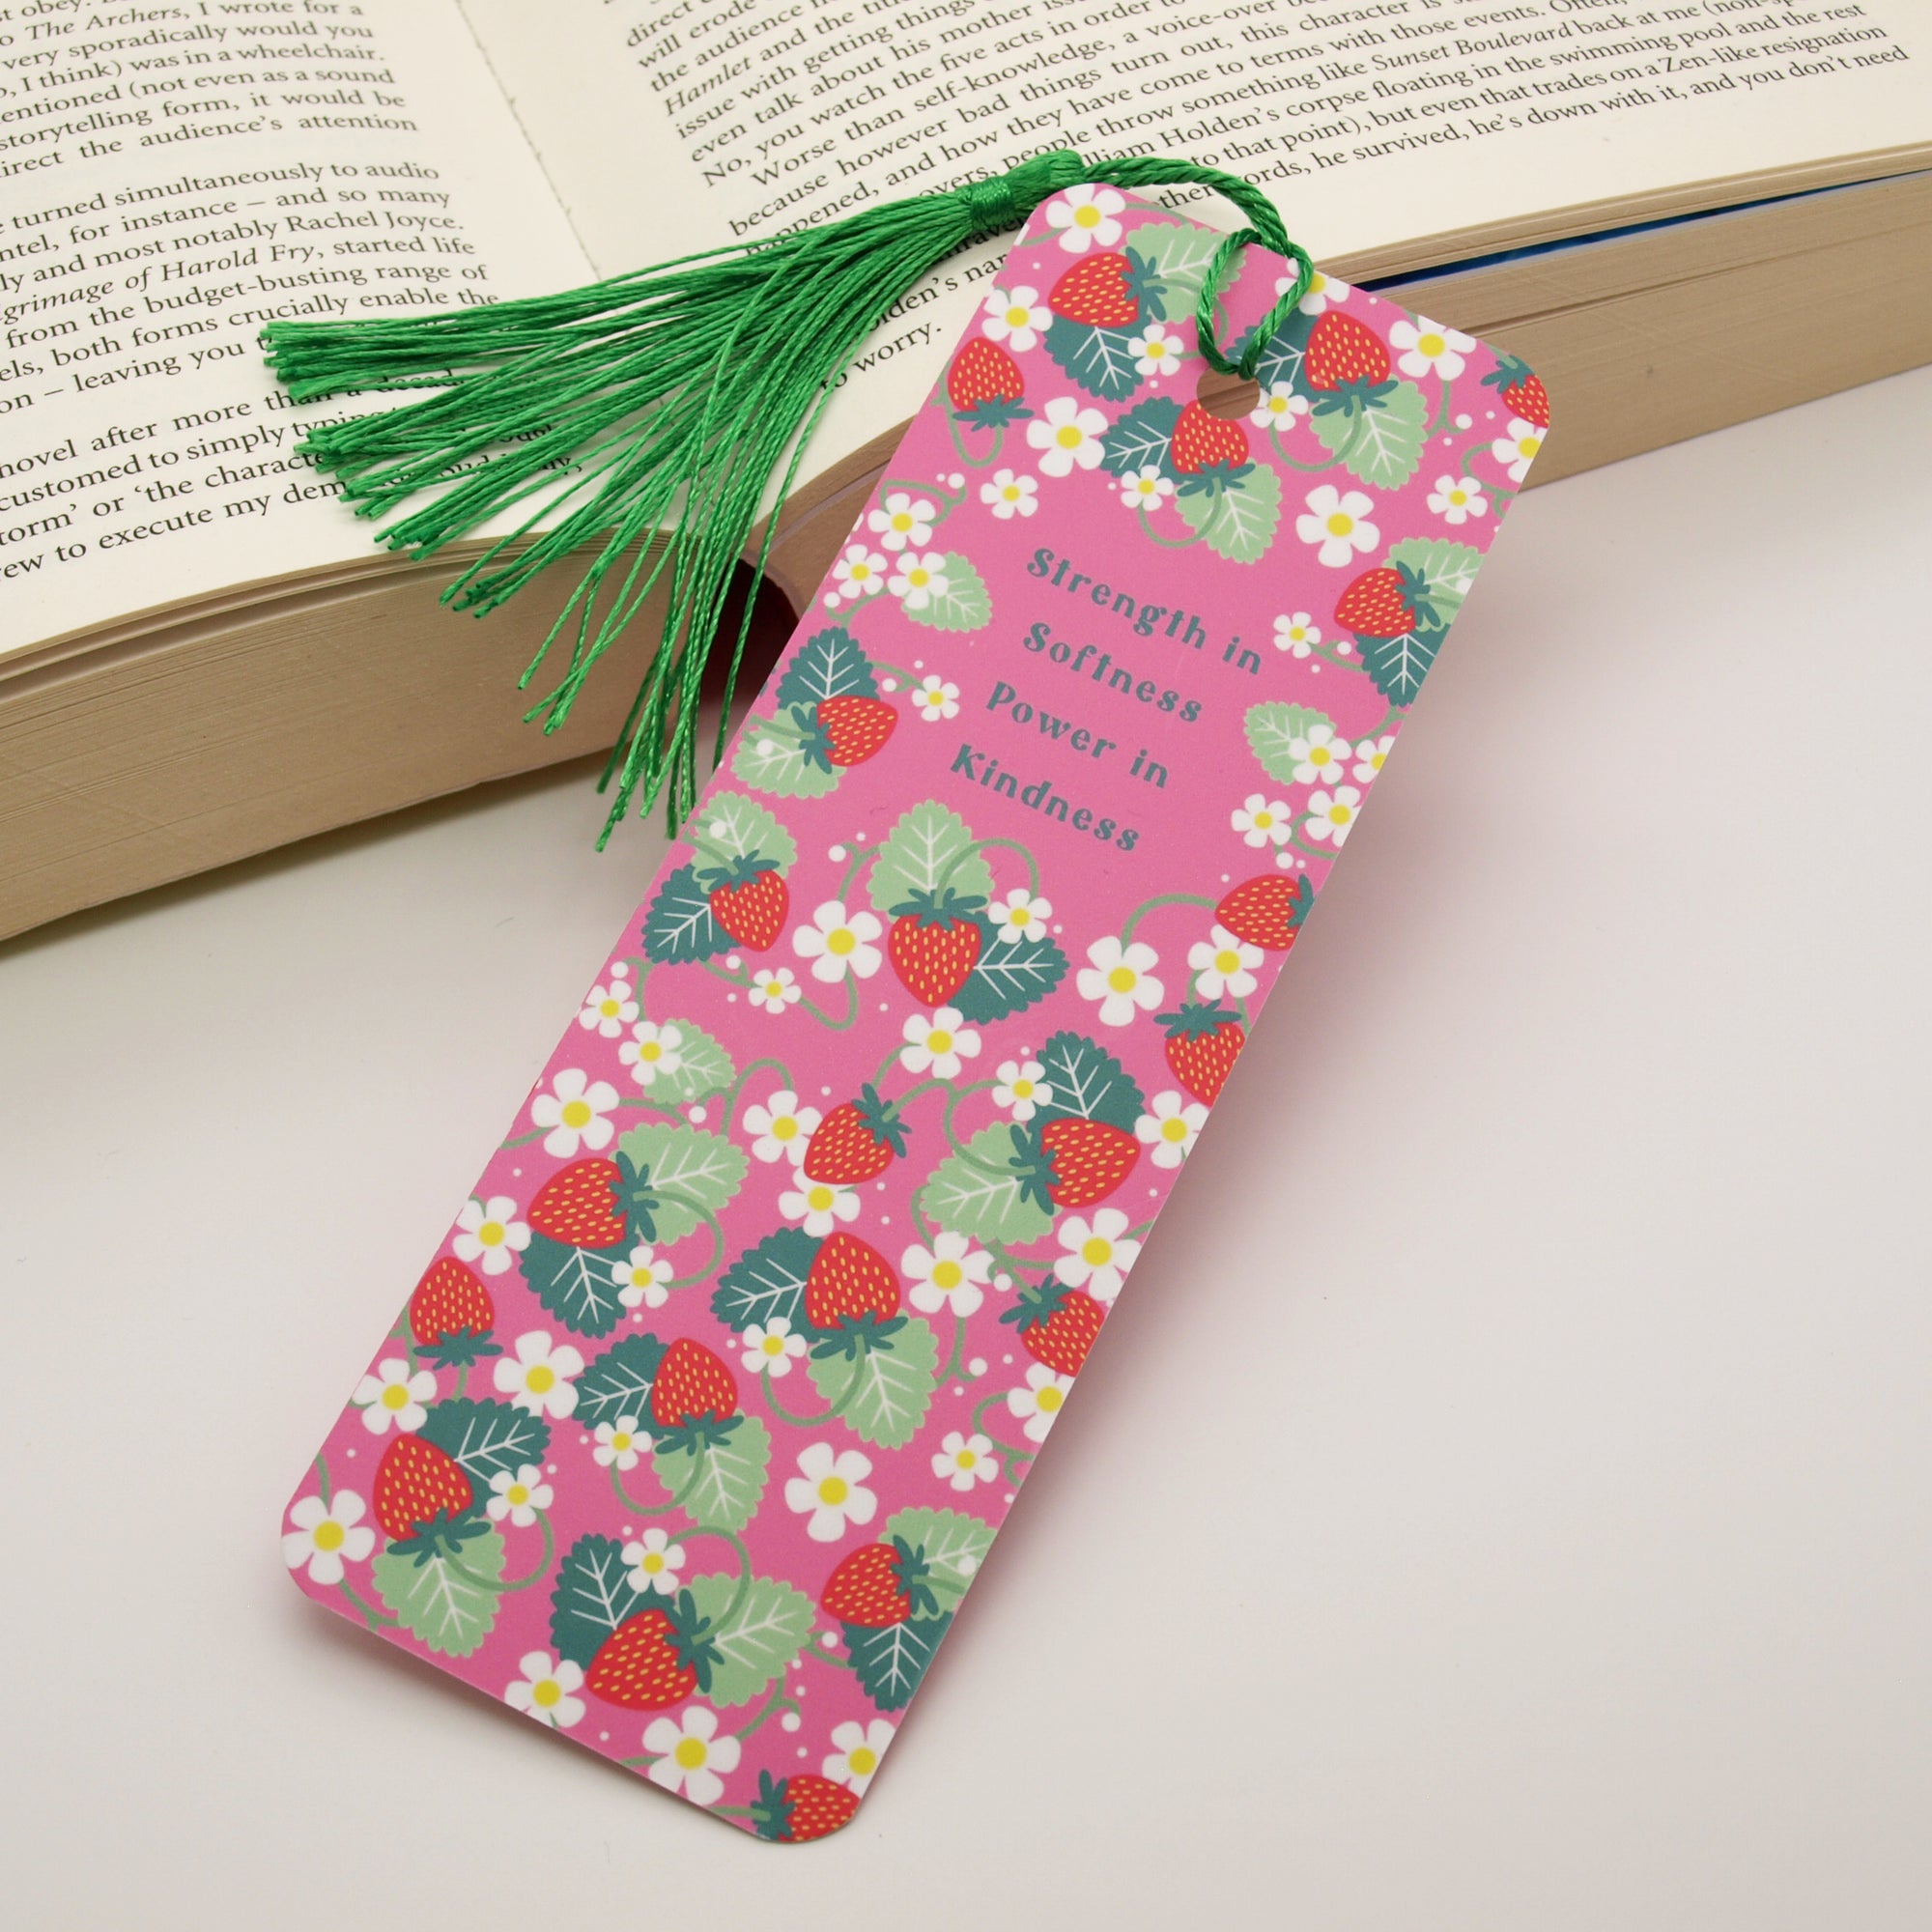 Softness & Kindness Bookmark